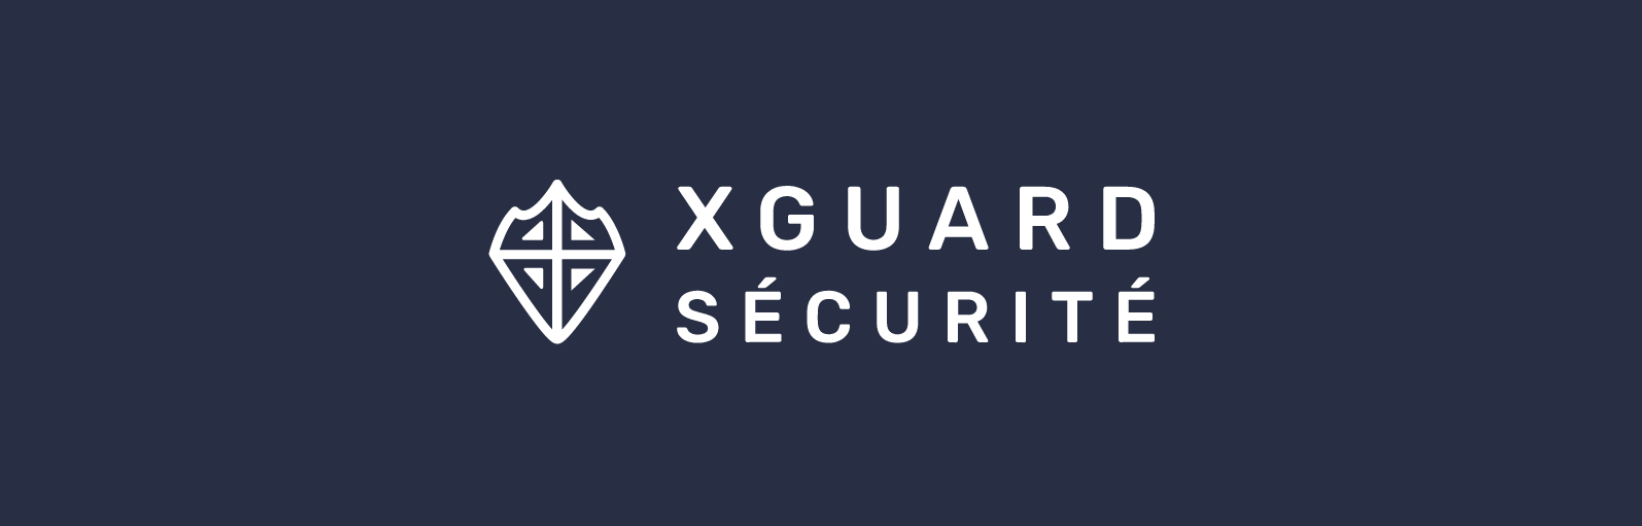 Patrouille de sécurité XGuard - Numéros pour joindre les agents jusqu'à mardi